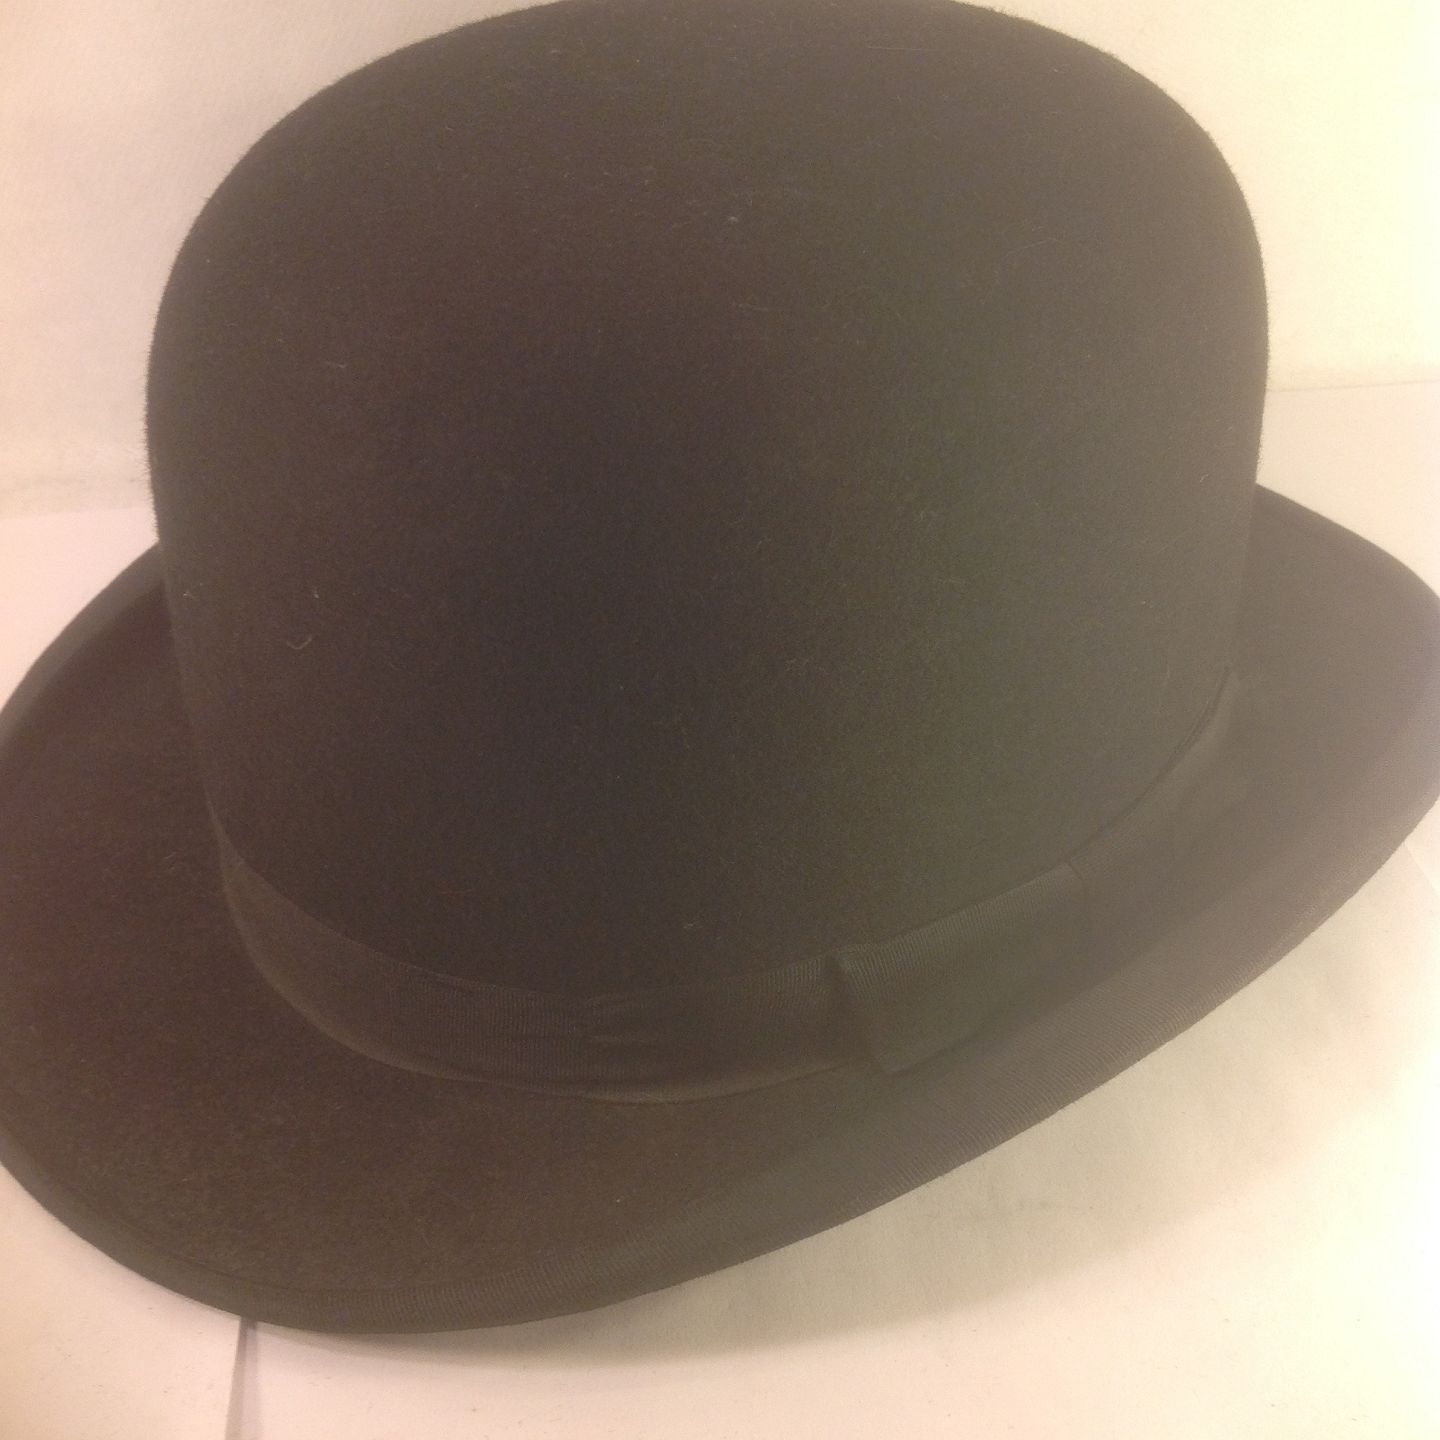 www.Antikvitet.net - Bowlerhat * Model The Jlco hat. * flot * 7, 57 * Telefon * 86983424 * Mo